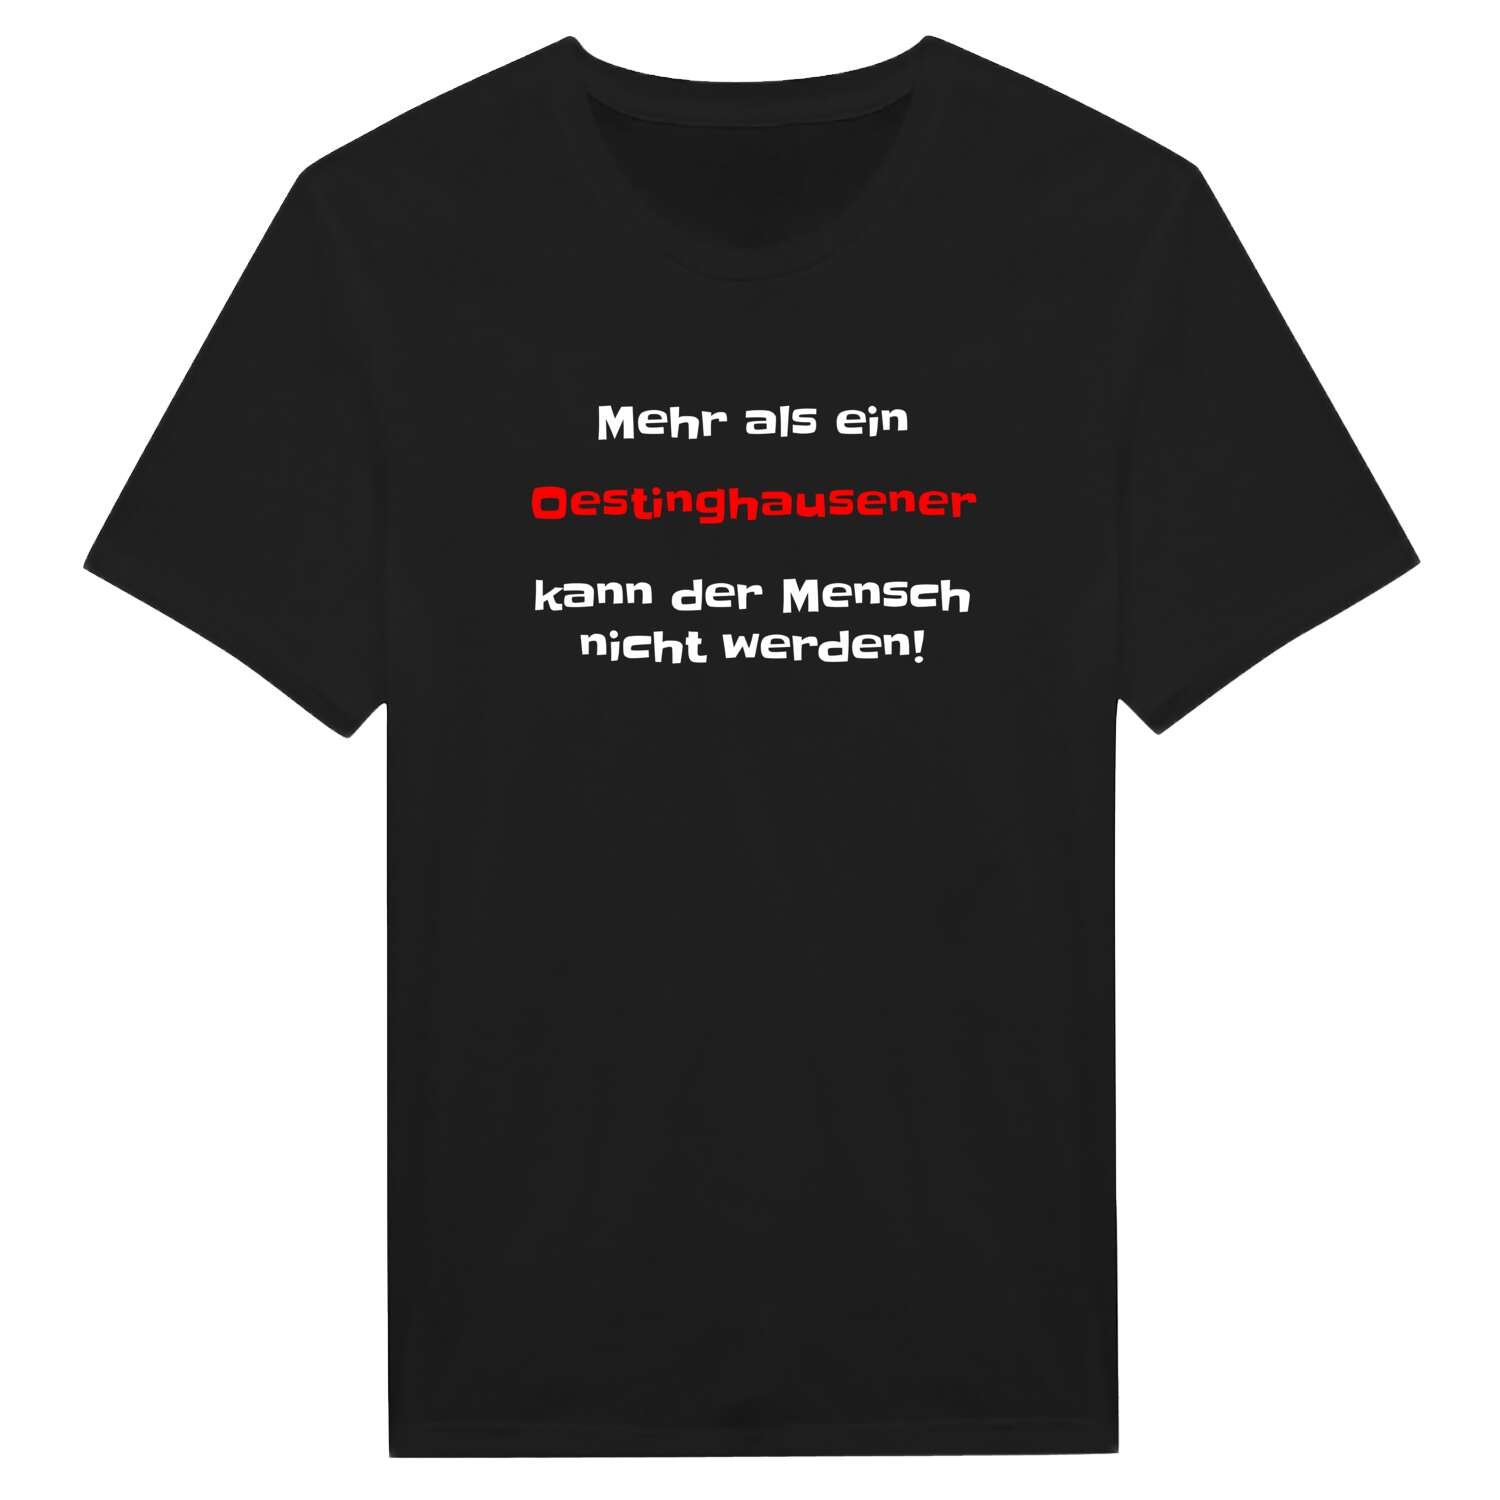 Oestinghausen T-Shirt »Mehr als ein«